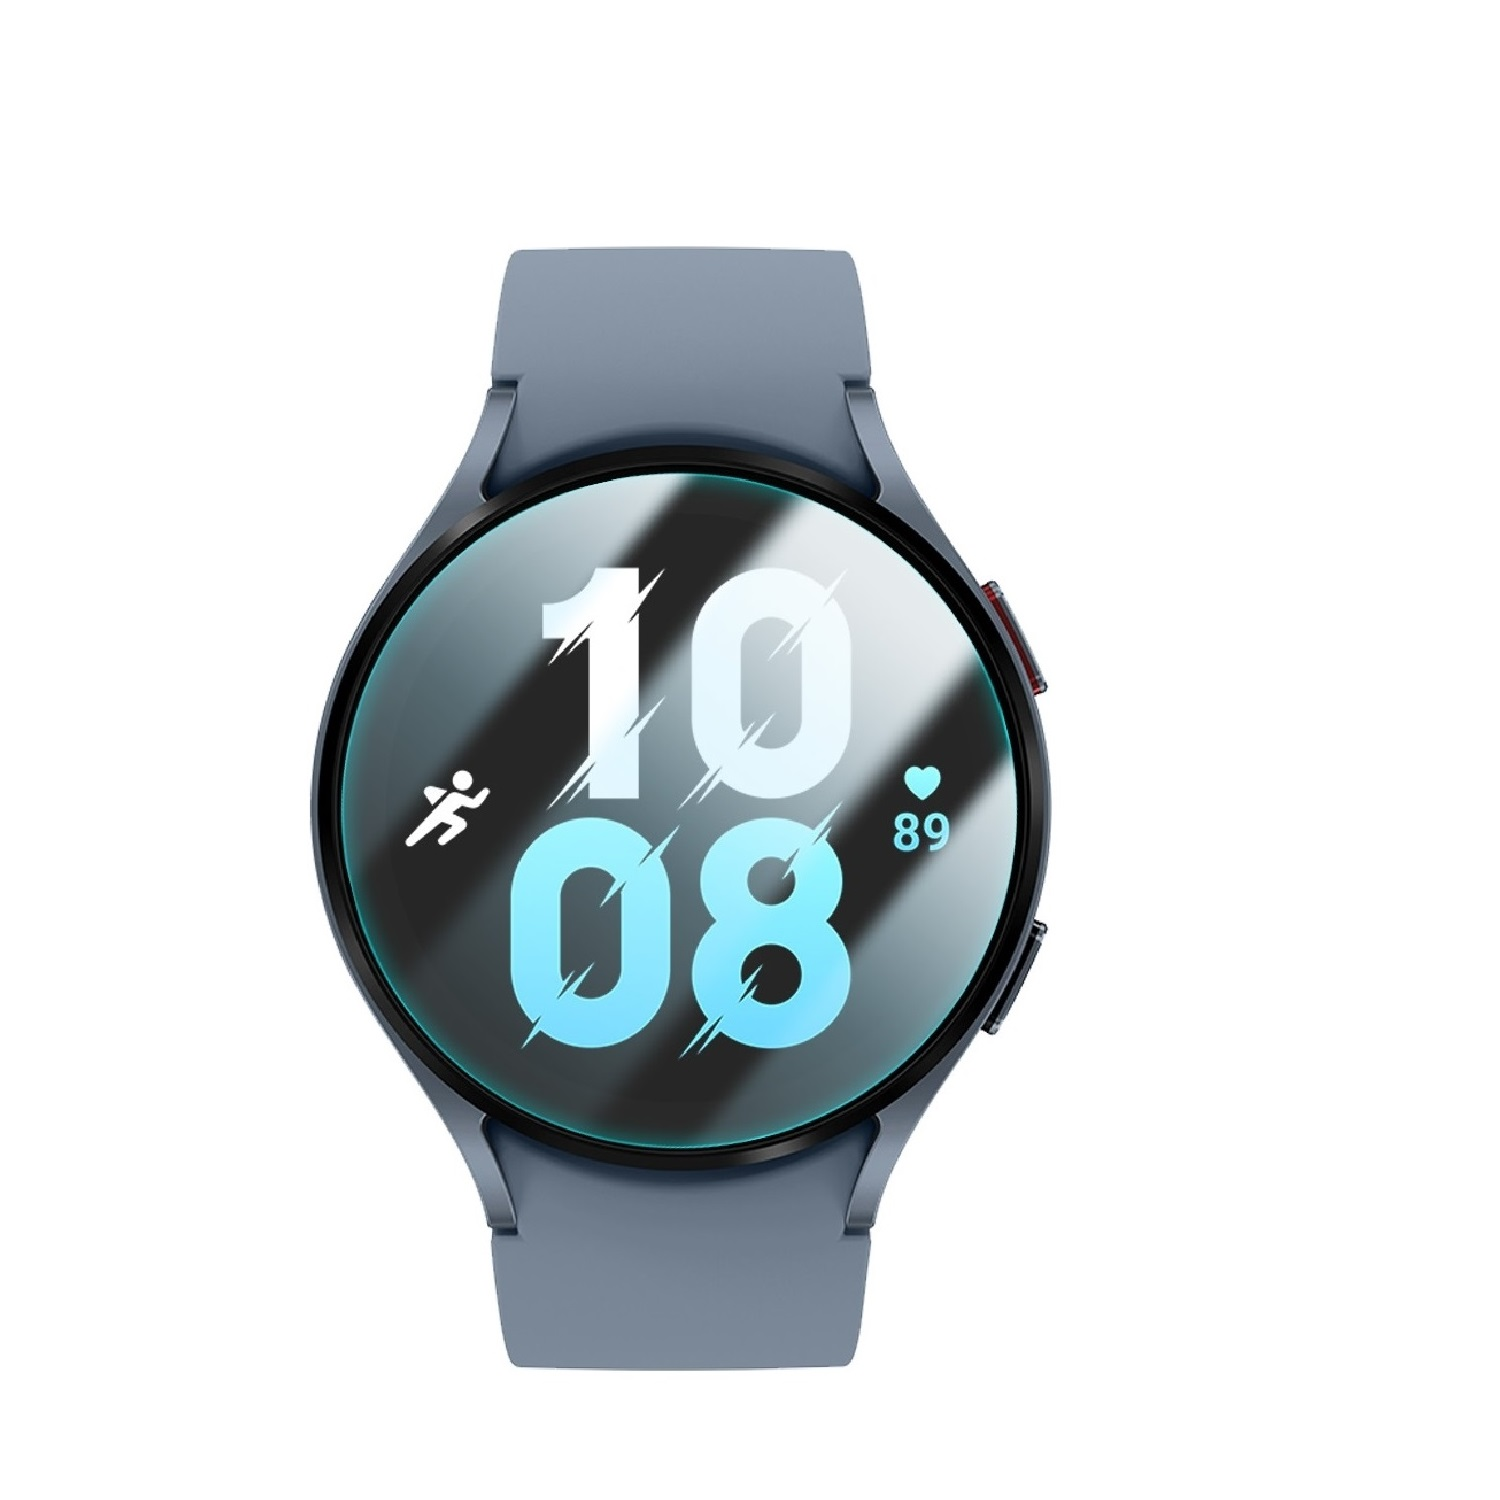 PROTECTORKING 1x 9H Hartglas Watch Galaxy KLAR Schutzglas Displayschutzfolie(für HD 5 44mm) Samsung